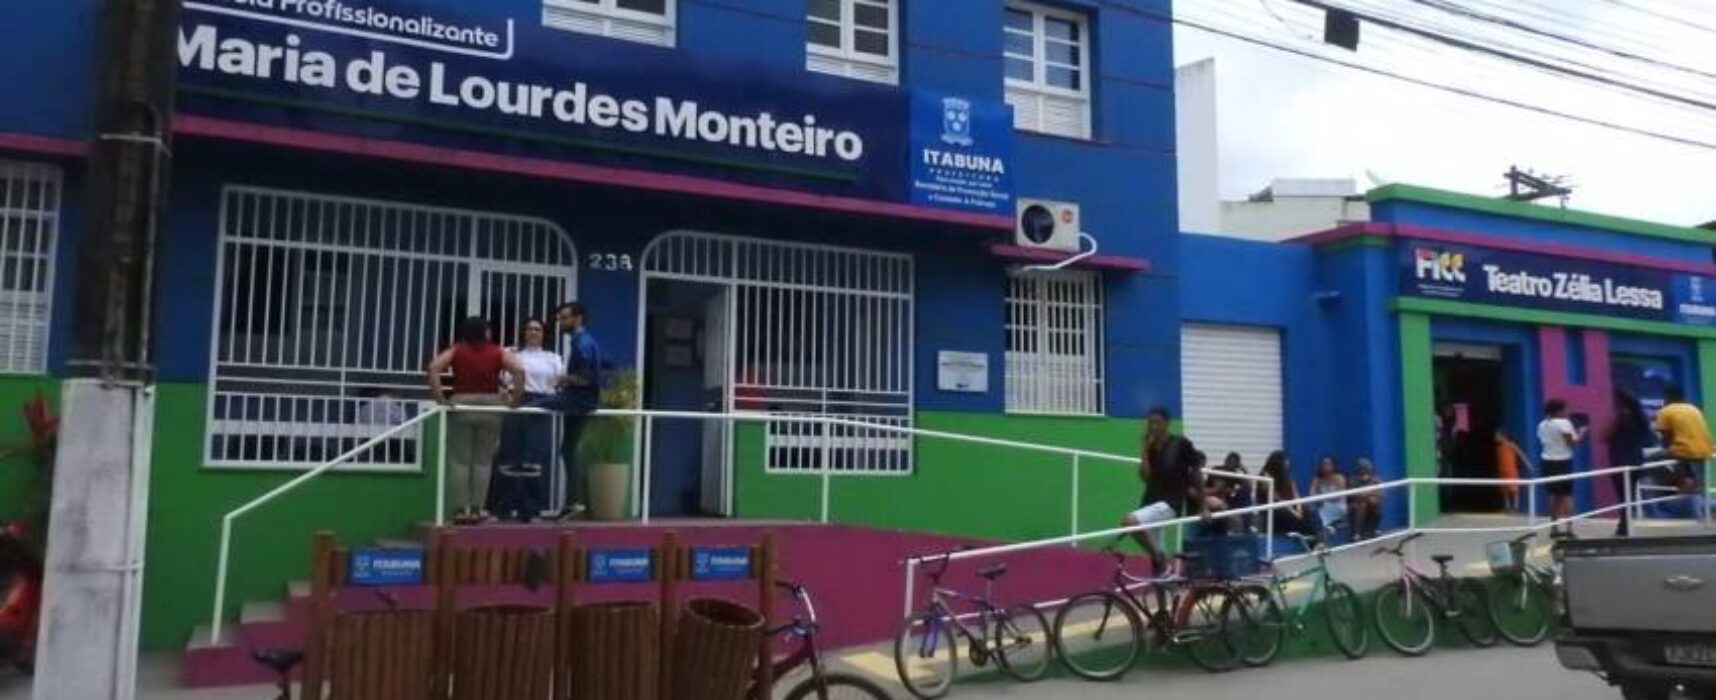 Prefeitura informa ainda haver vagas para a Escola Profissionalizante Maria de Lourdes Monteiro